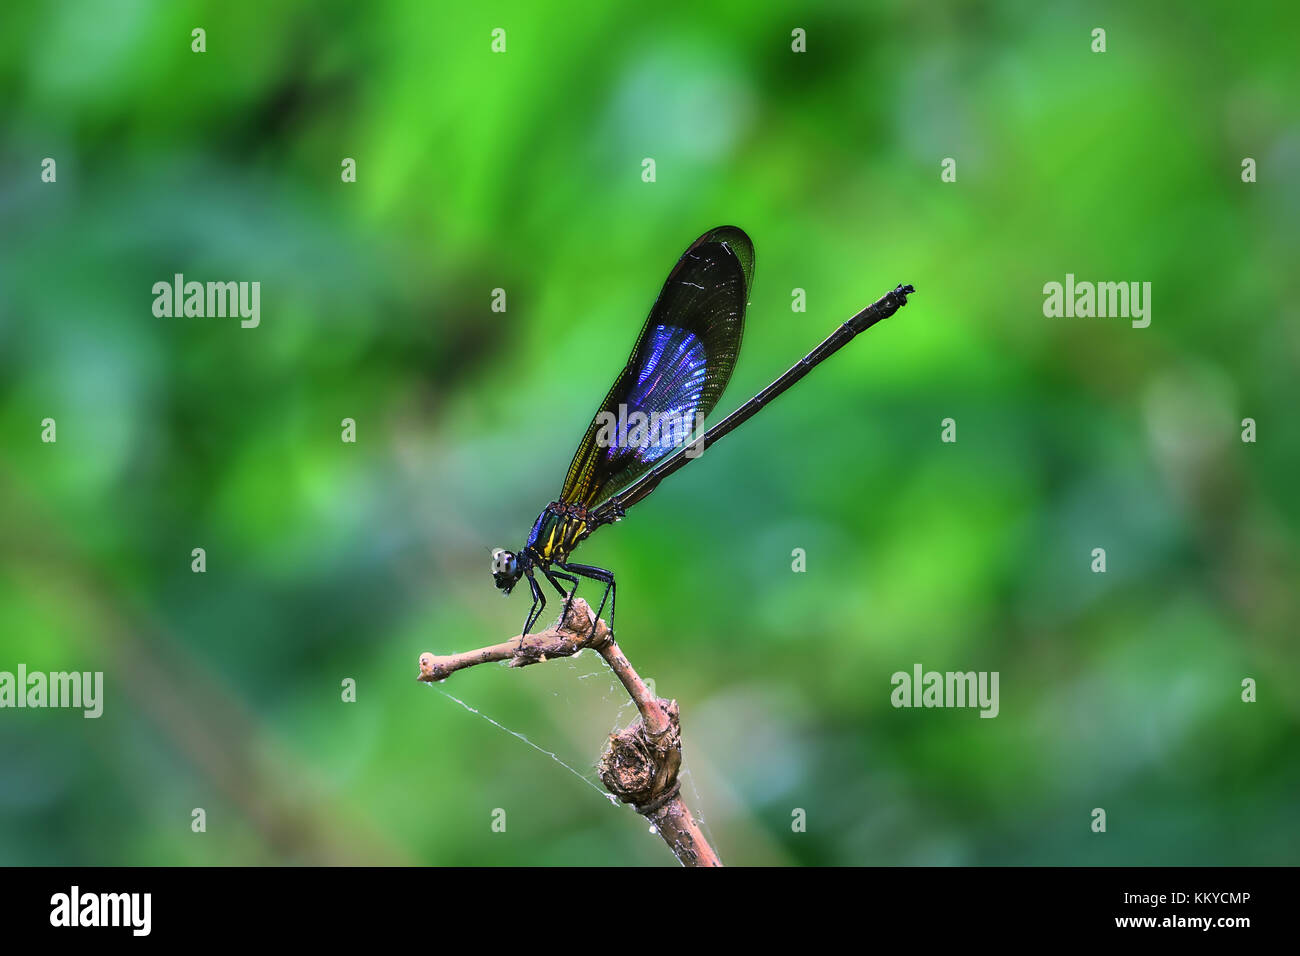 Blue Wings Damselfy/Dragon Fly/Zygoptera assis dans le bord de la tige de bambou Banque D'Images